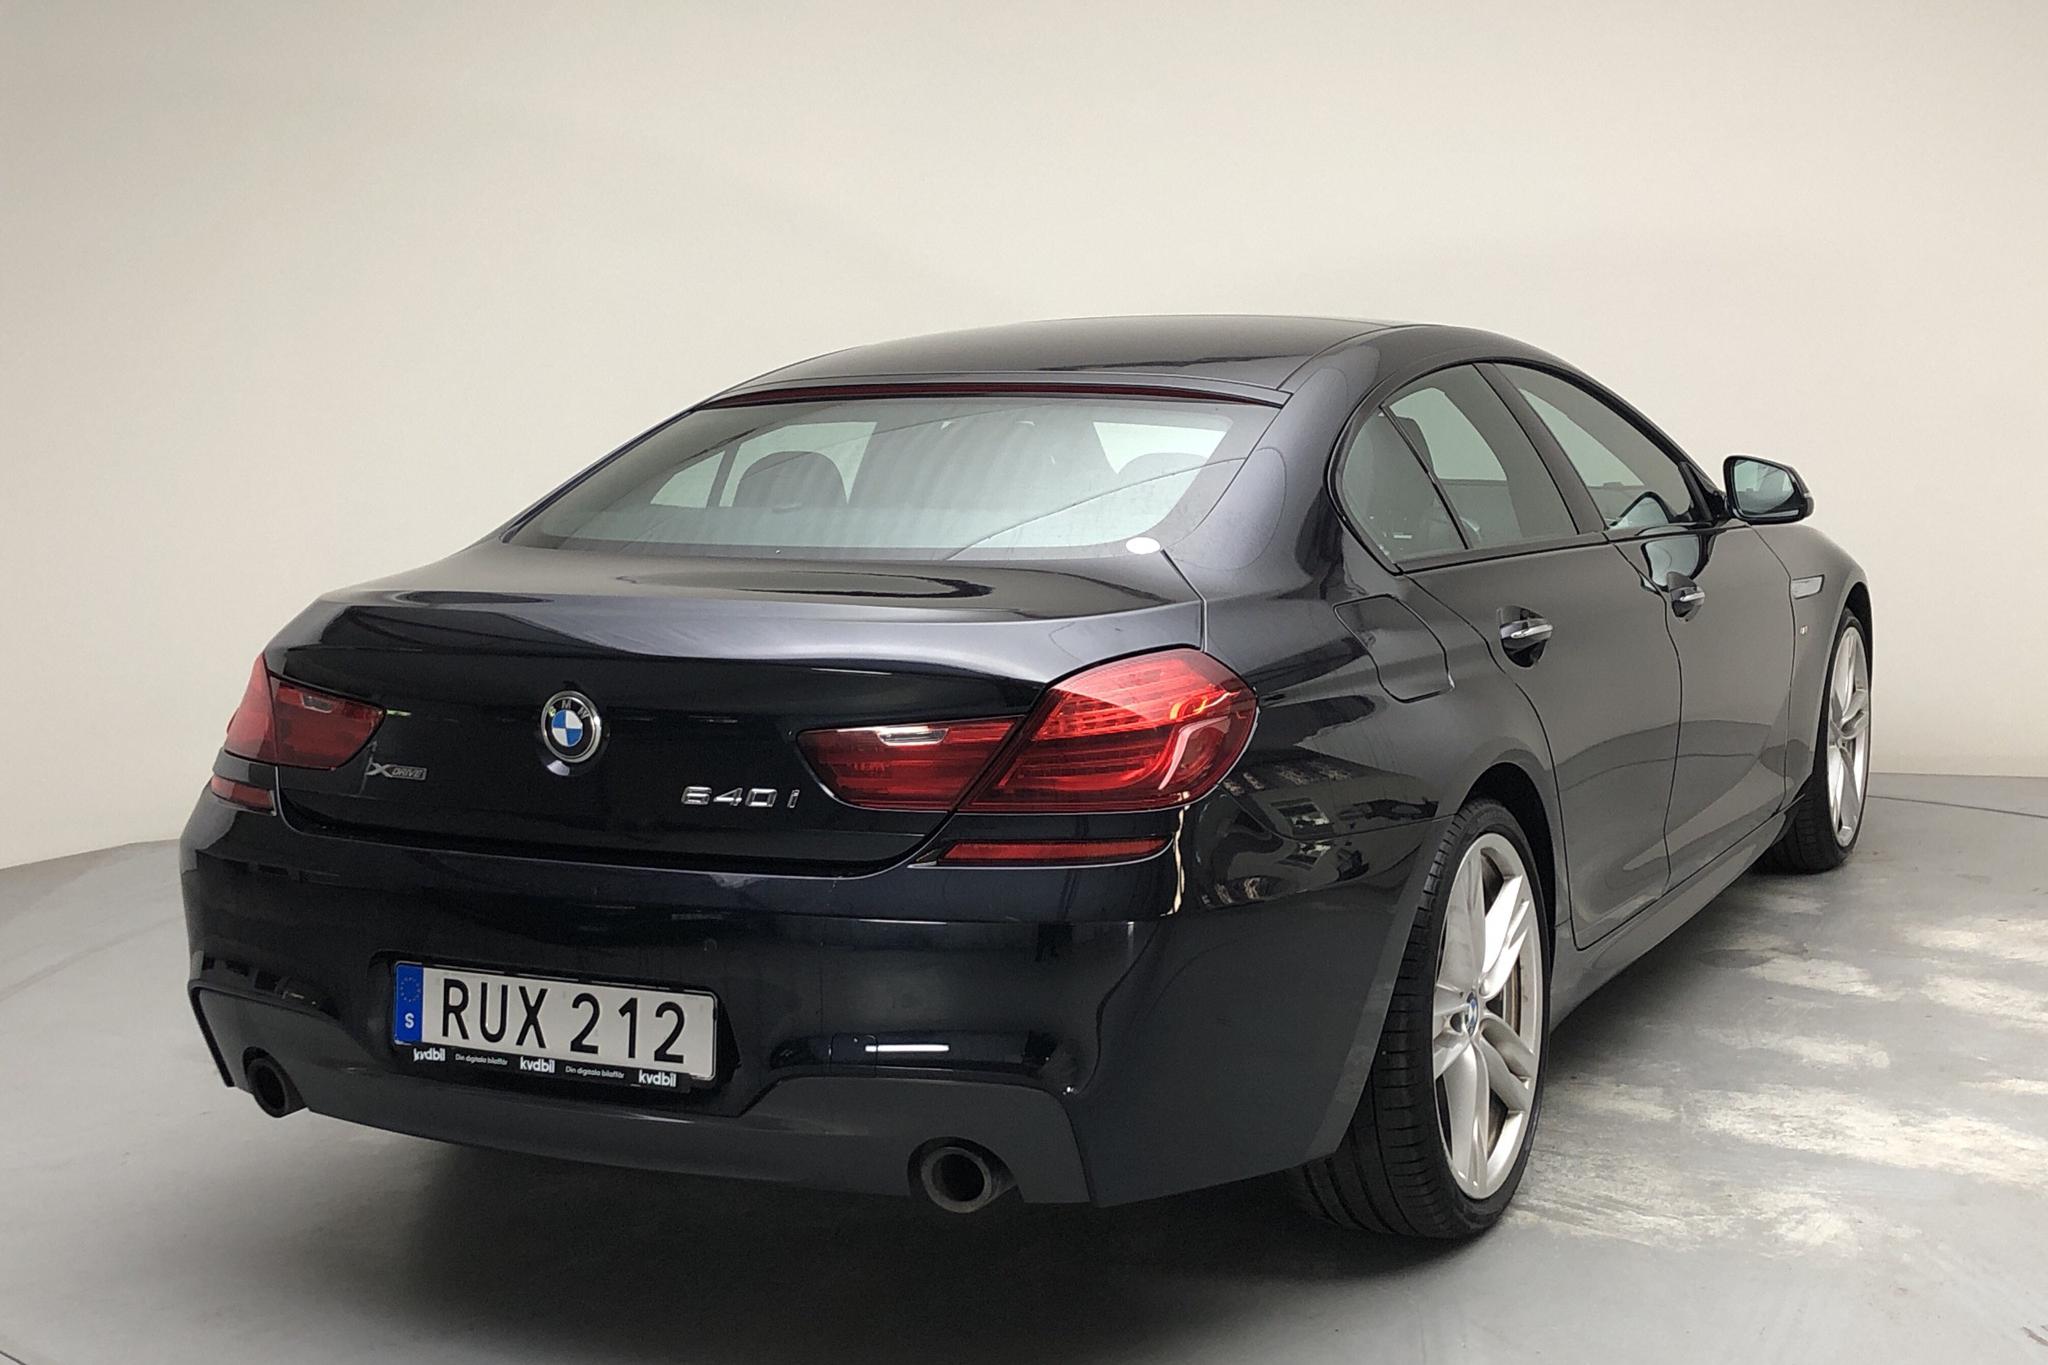 BMW 640i xDrive Gran Coupé, F06 (320hk) - 48 290 km - Automatic - black - 2018